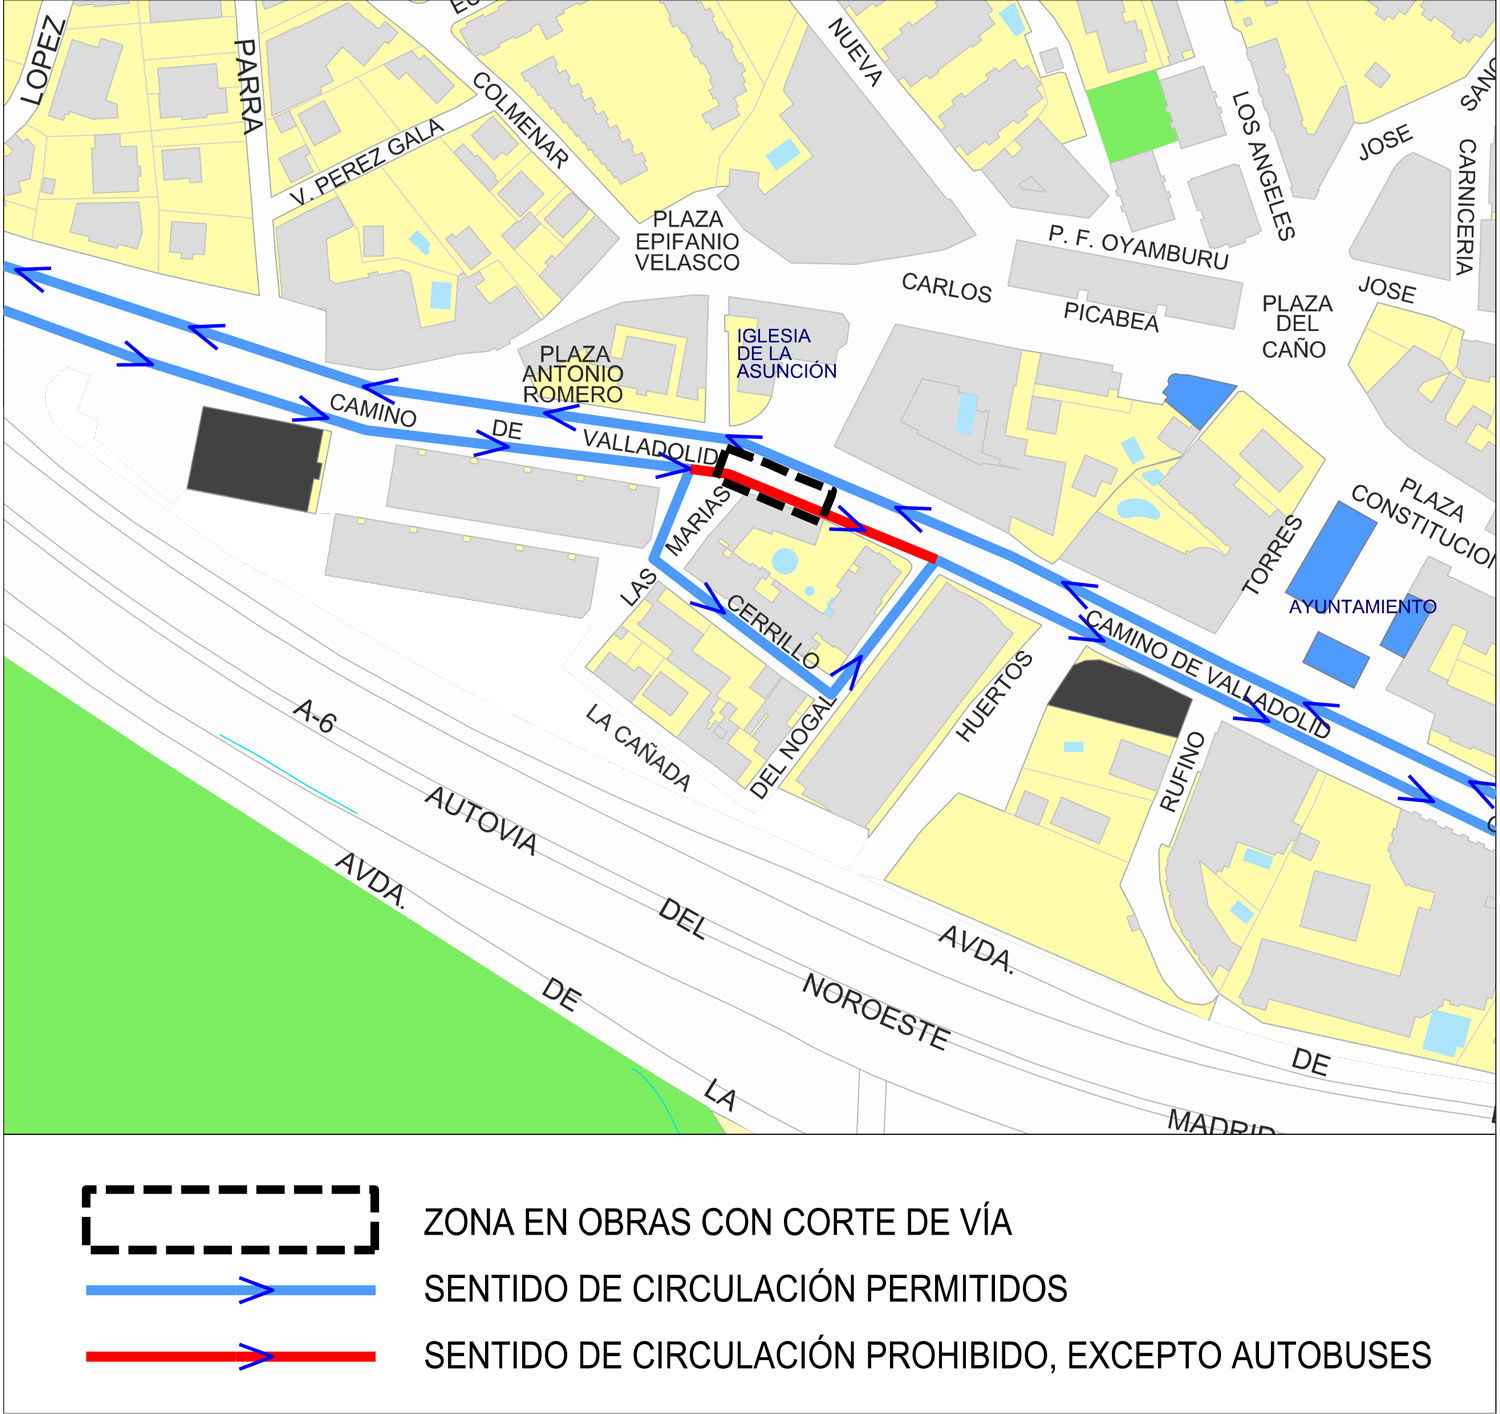 Corte de circulación en la C/ Camino de Valladolid